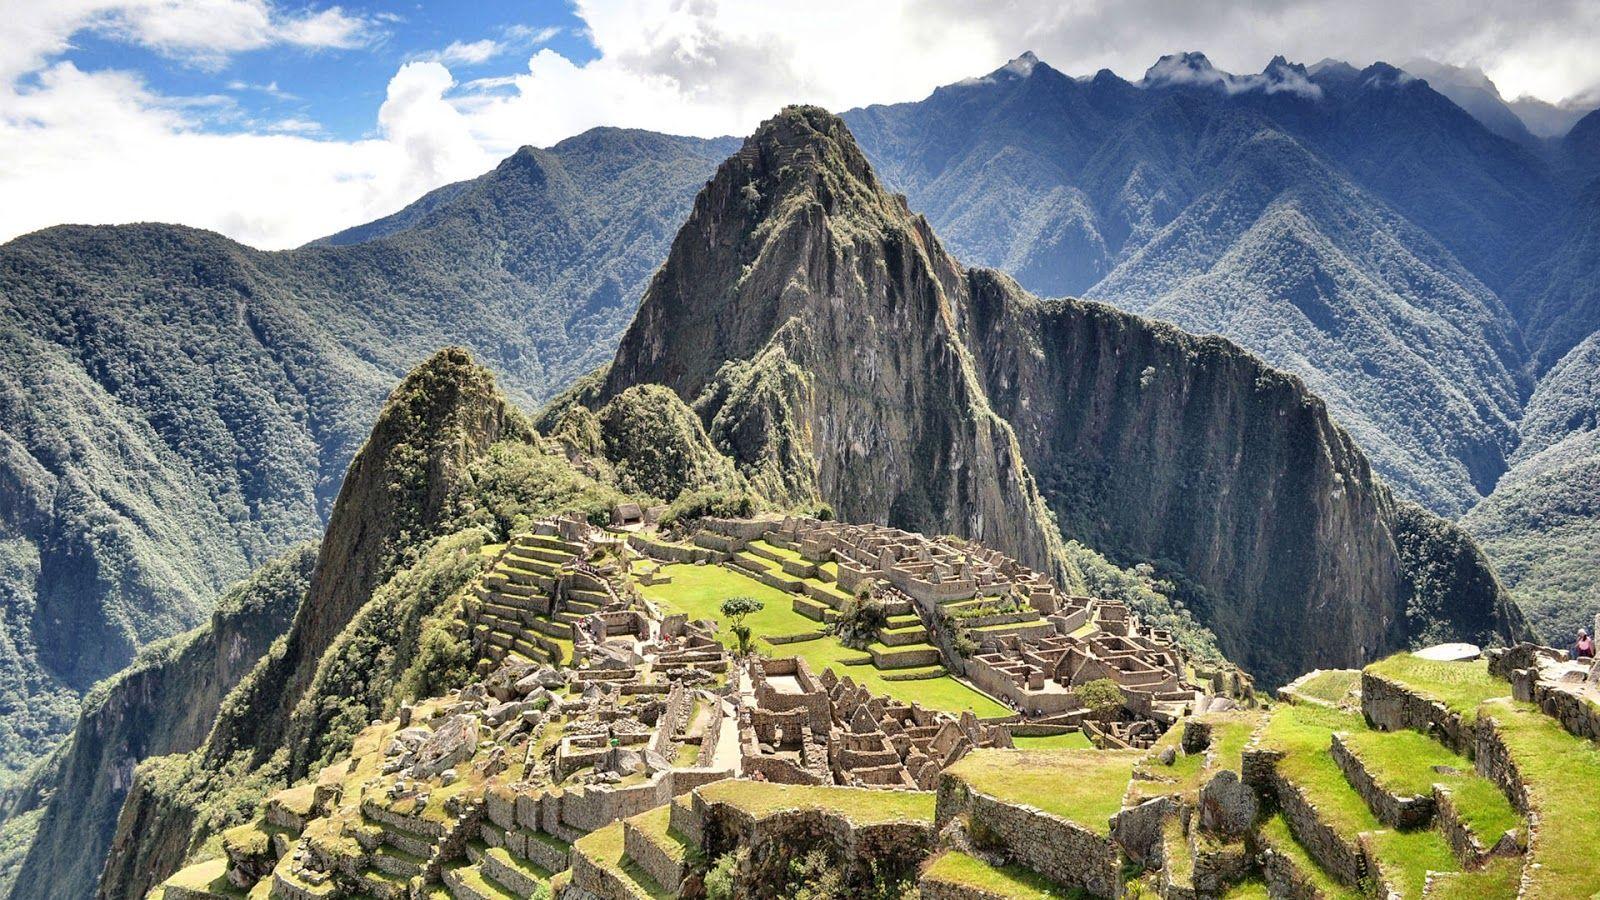 Machu Picchu Peru Wallpapers - Top Free Machu Picchu Peru Backgrounds ...